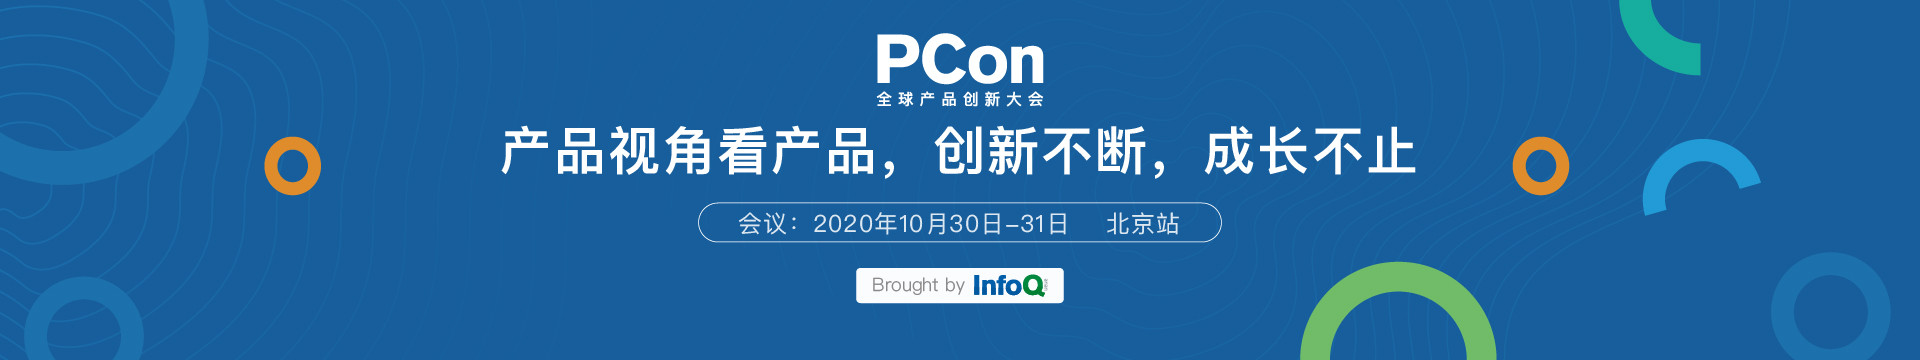 PCon全球产品创新大会.2020北京站